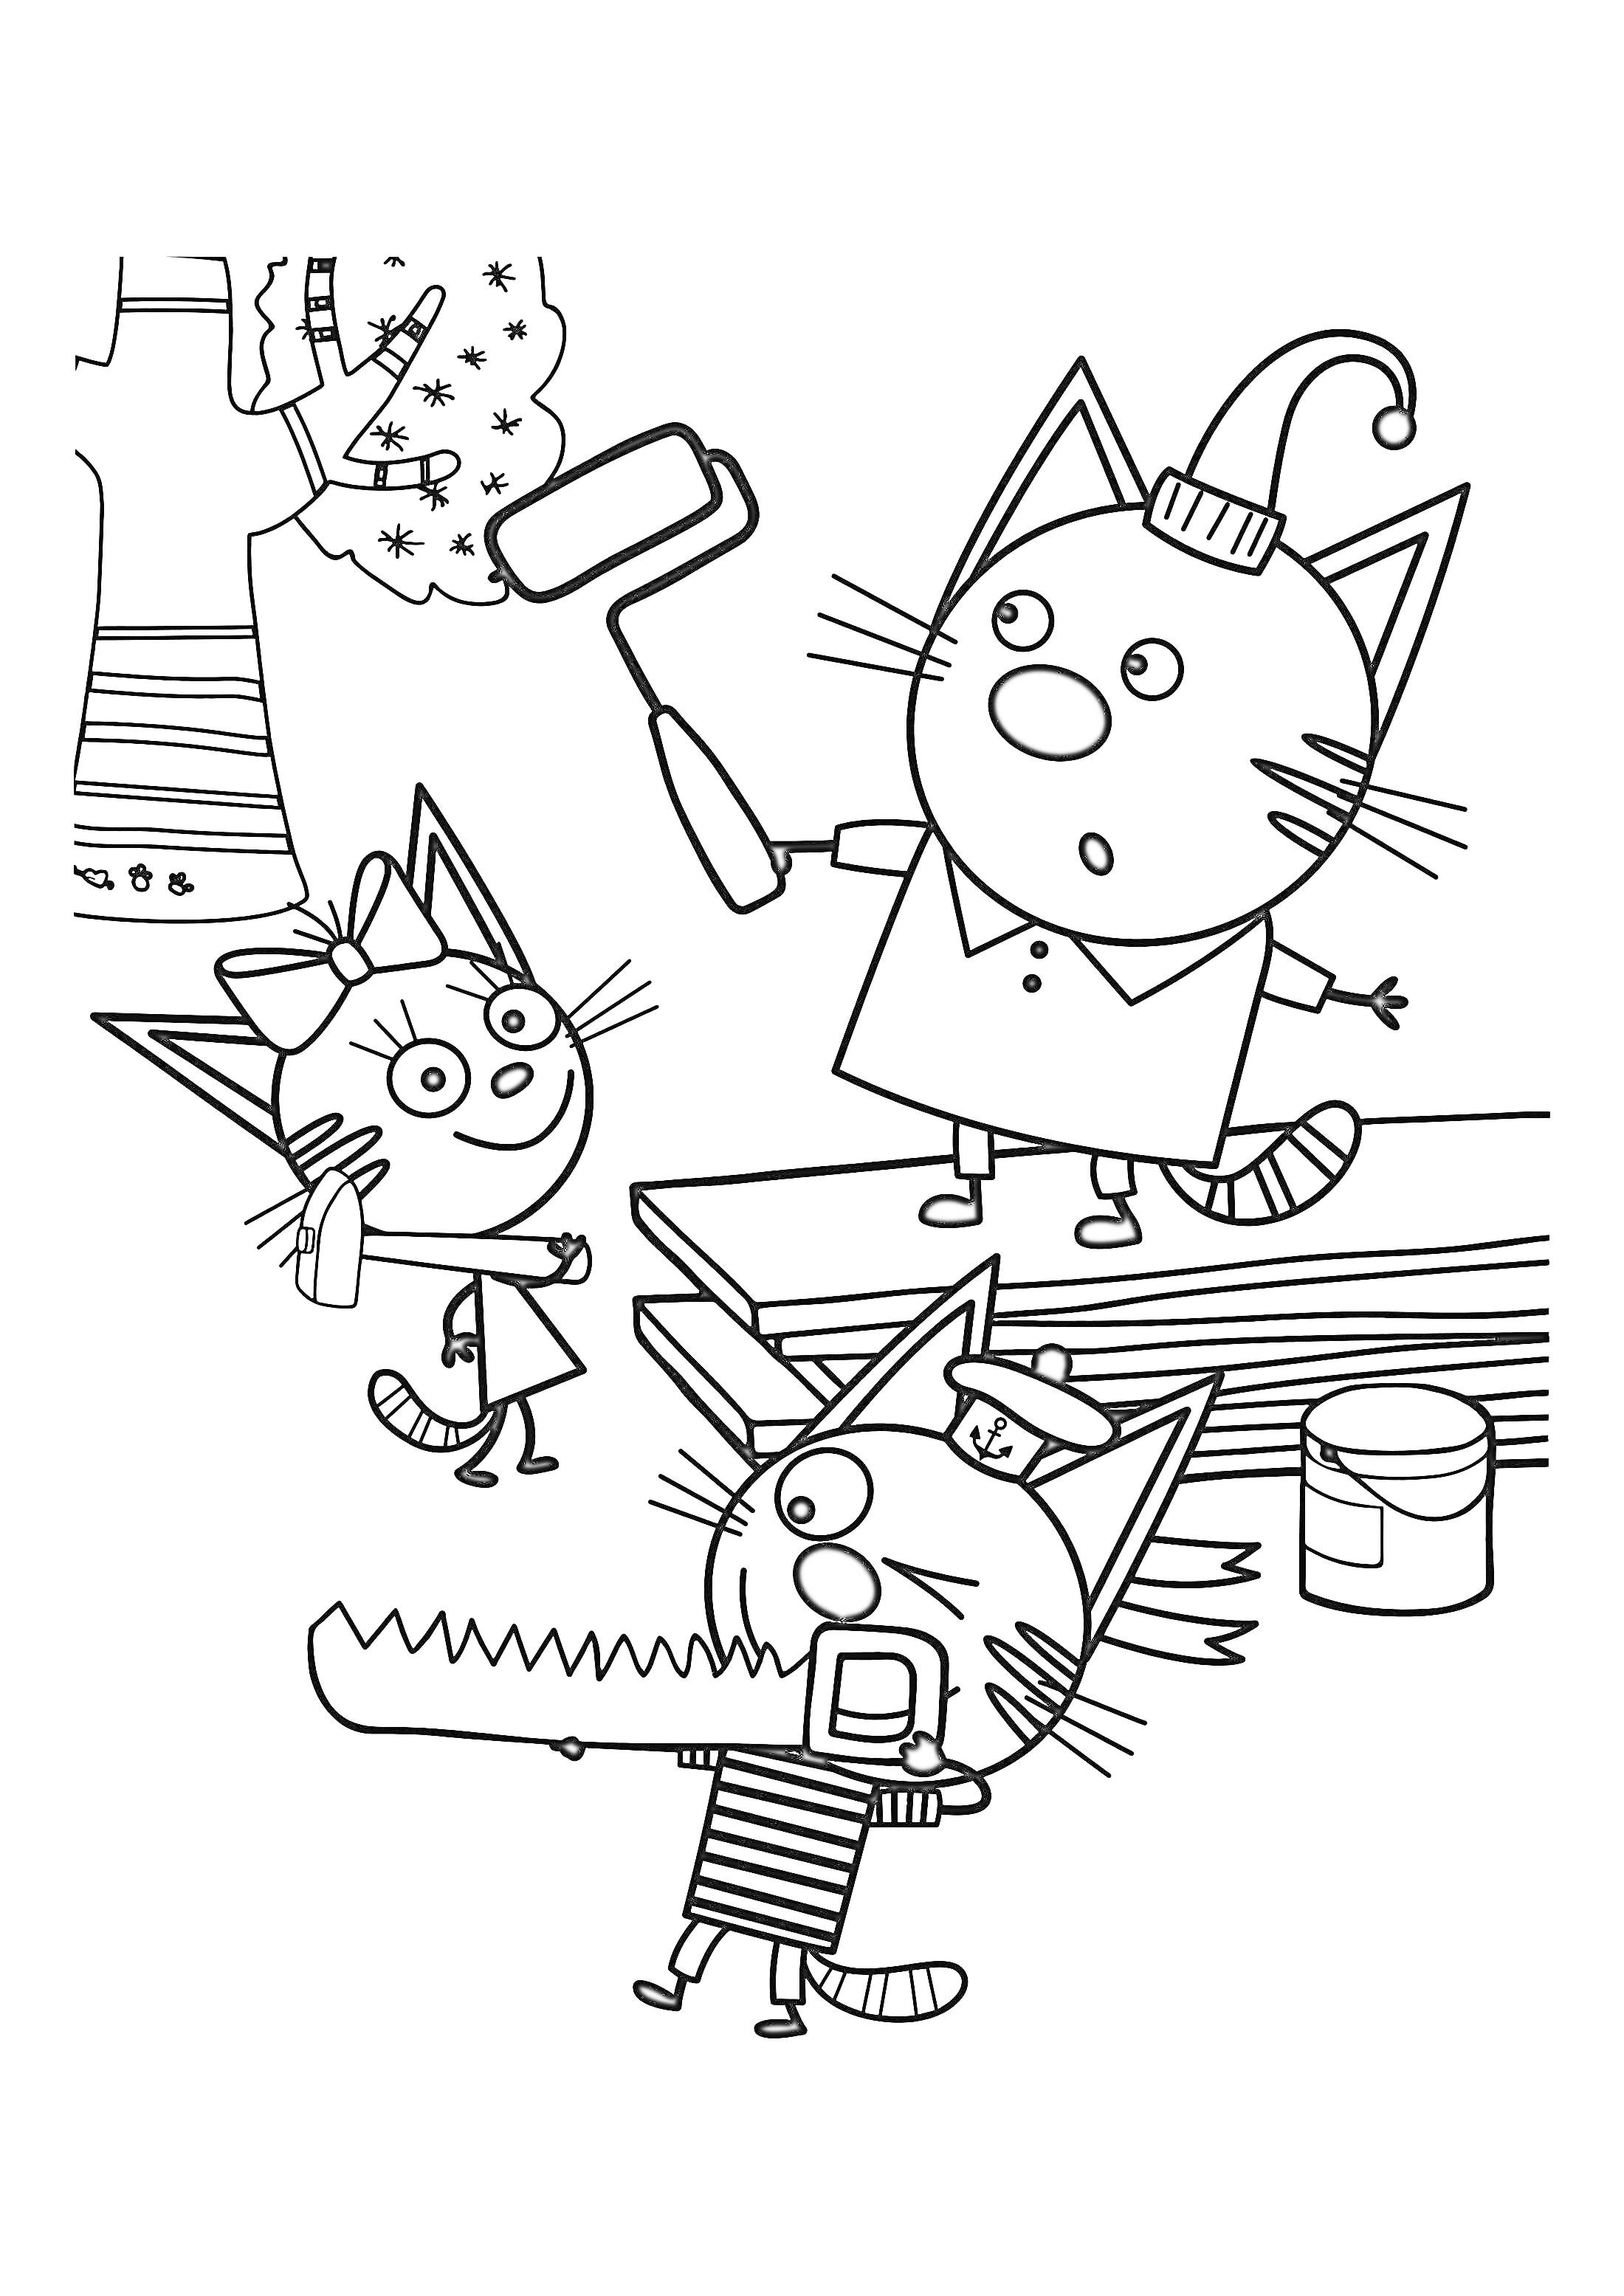 Раскраска Котята работают: кот с валиком возле дерева, котенок с пилой, кошечка с бантом